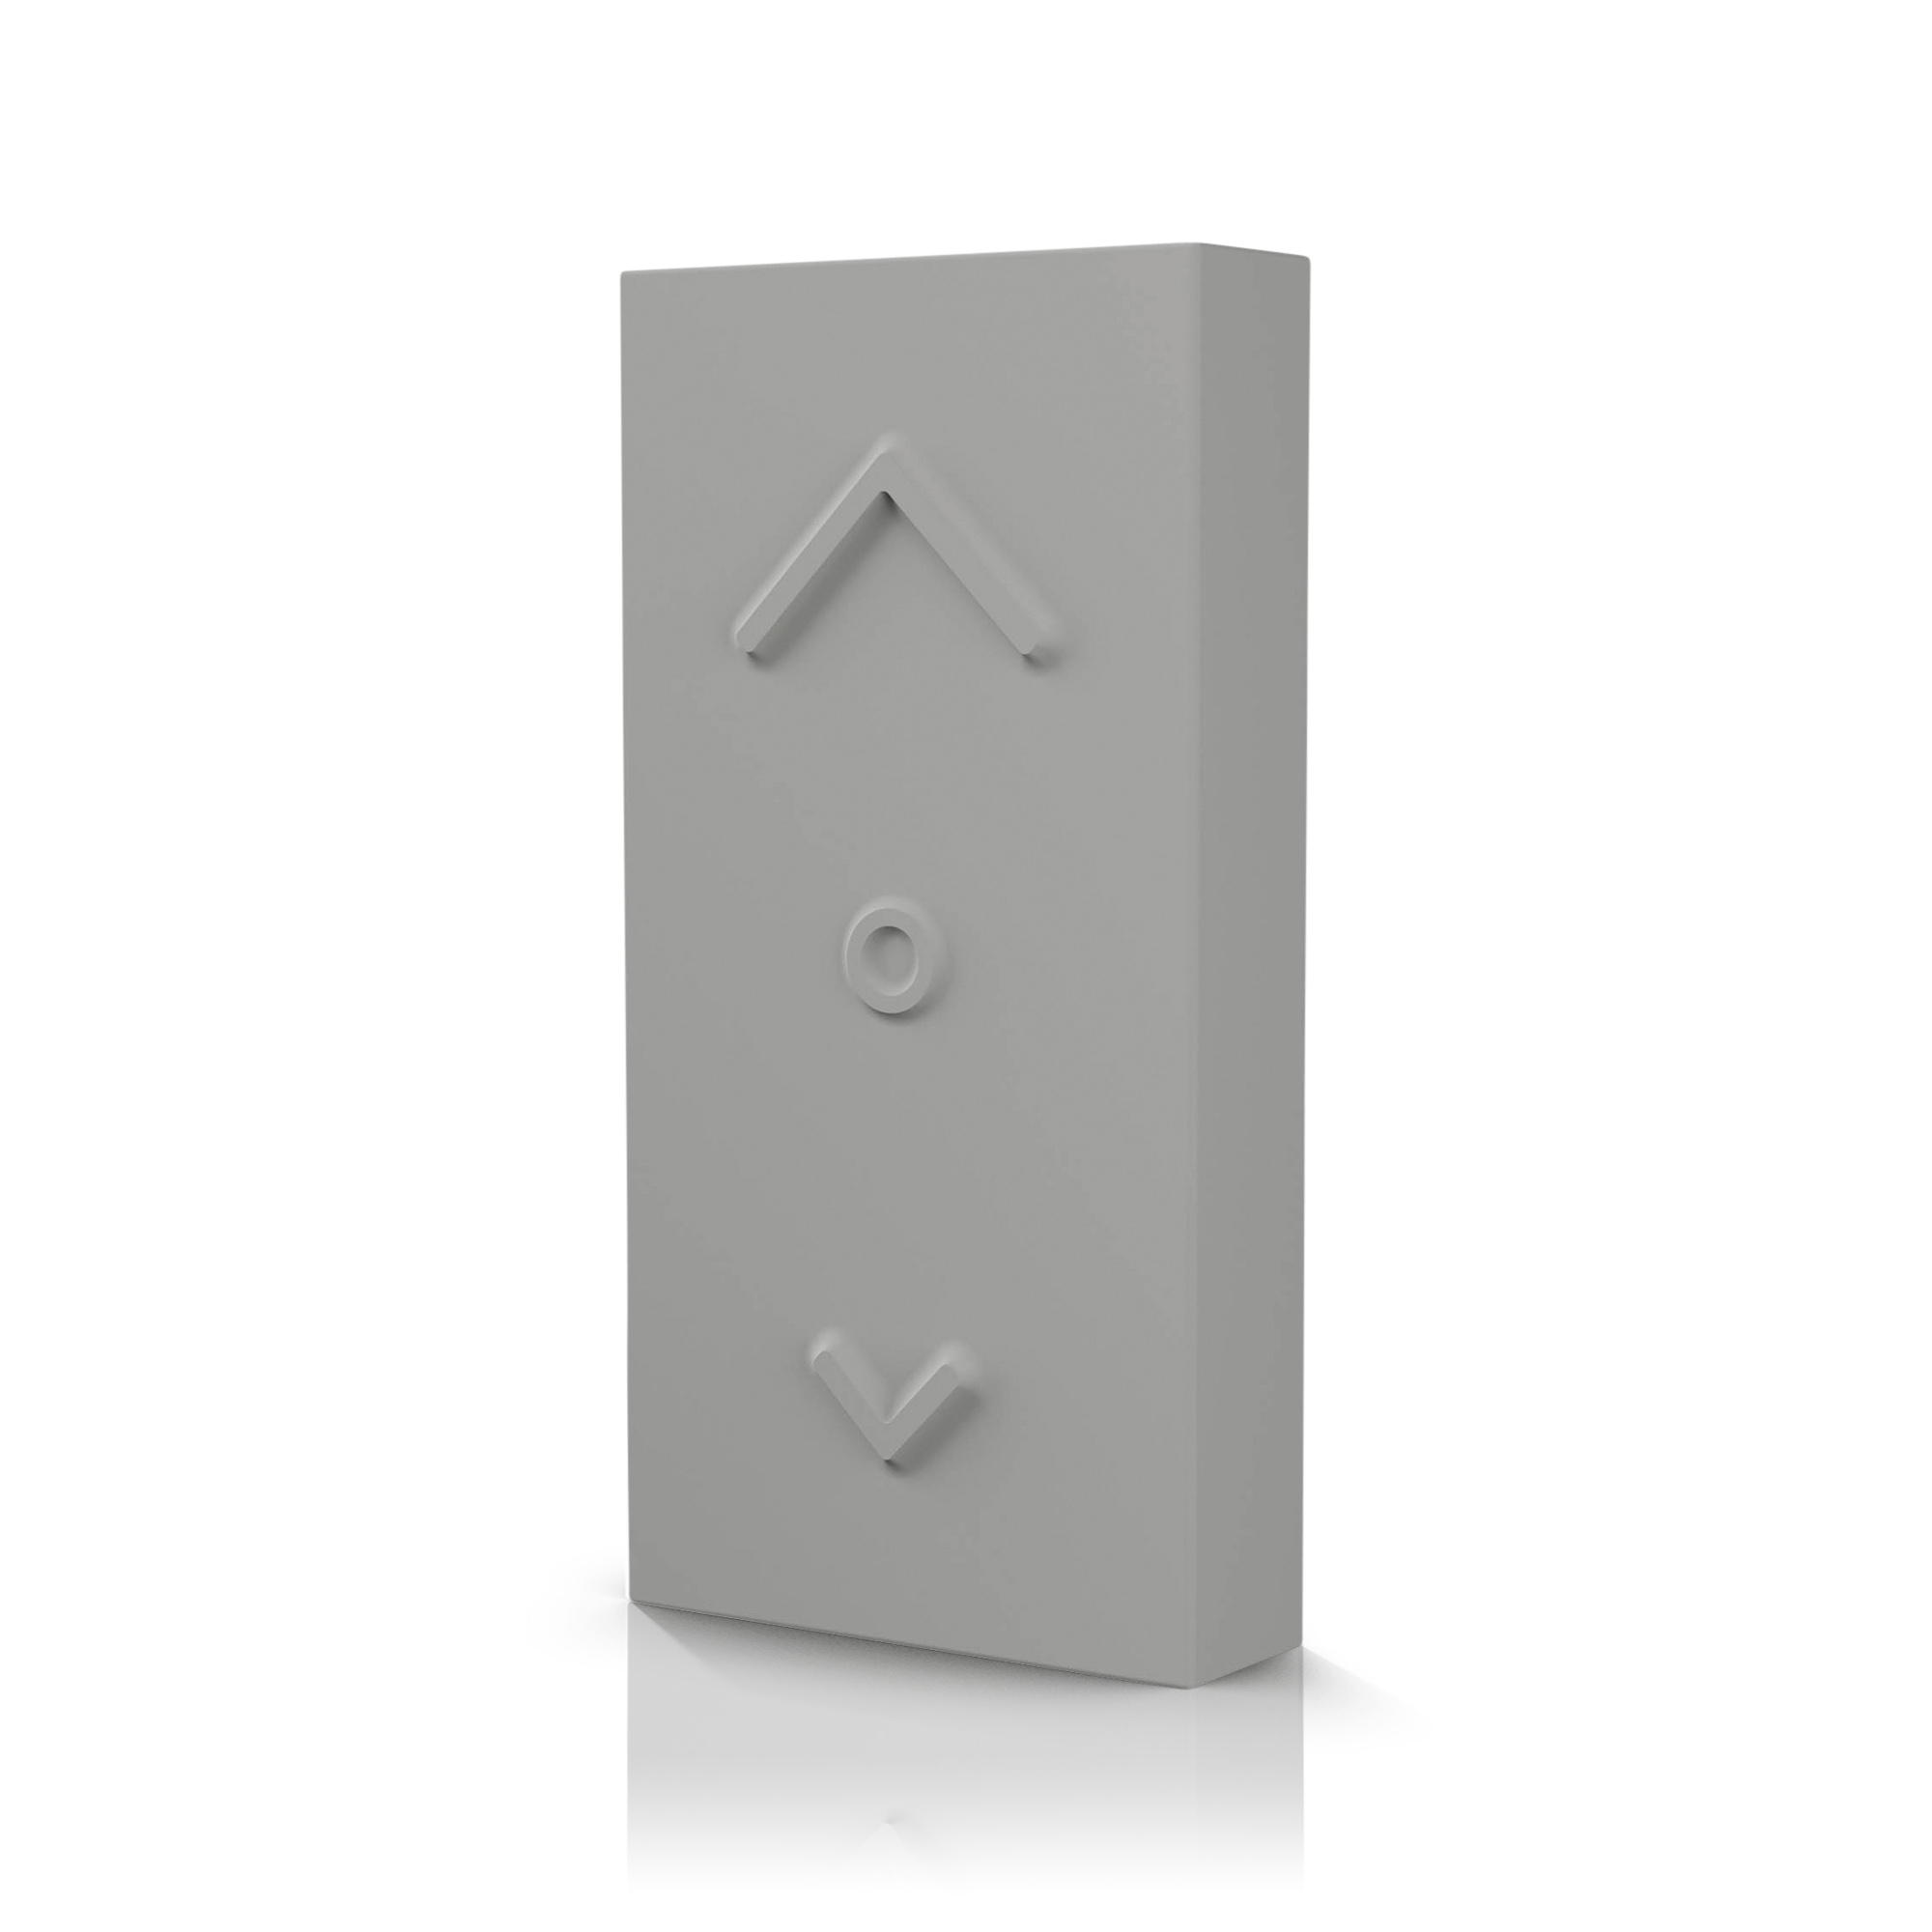 Osram Smart+ Switch Mini grey